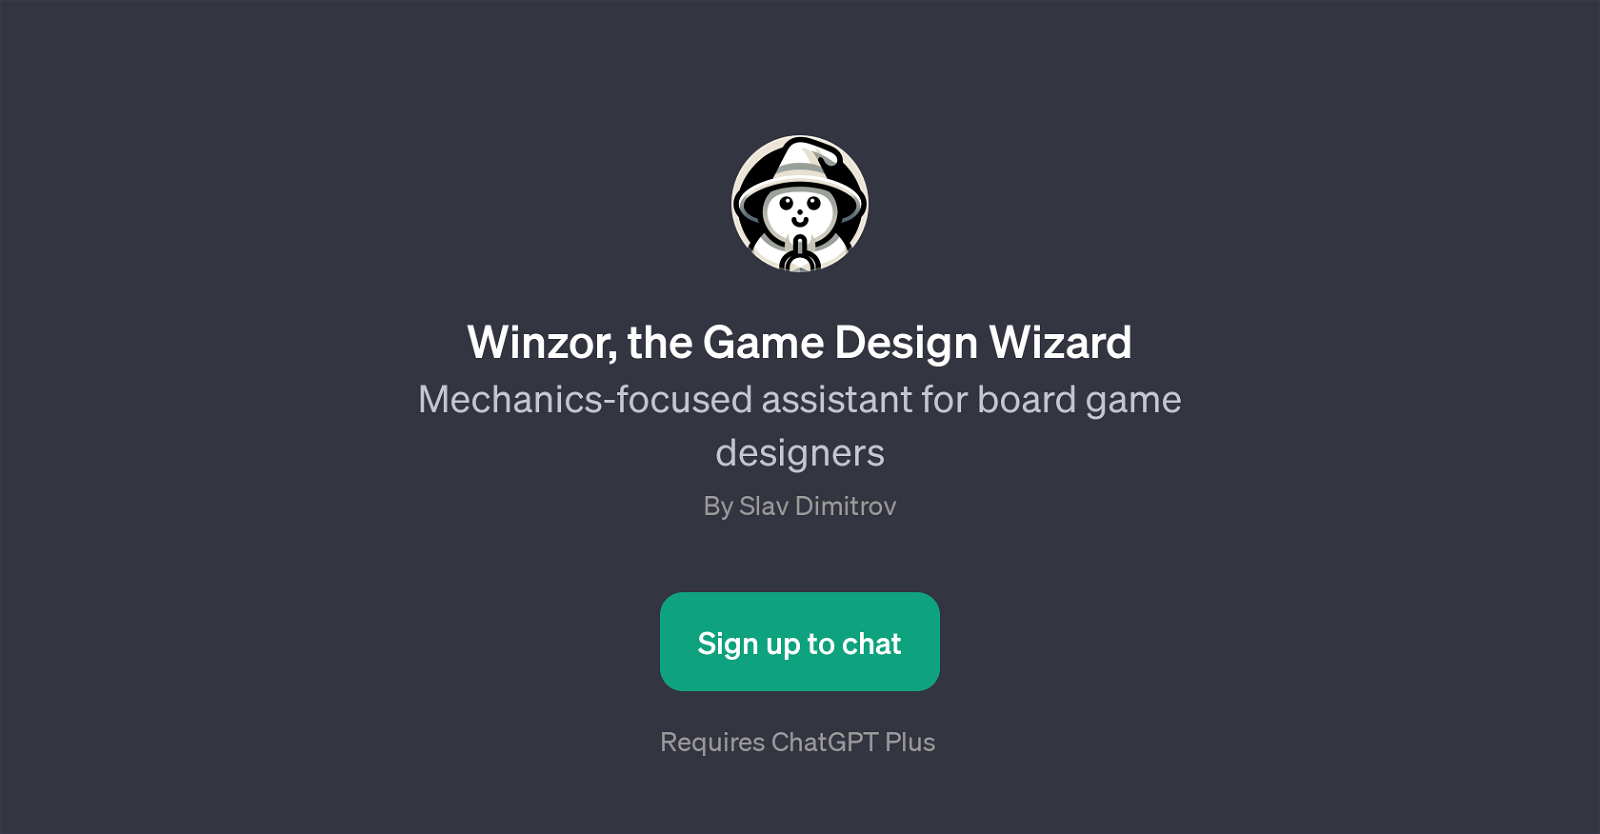 Winzor, the Game Design Wizard website